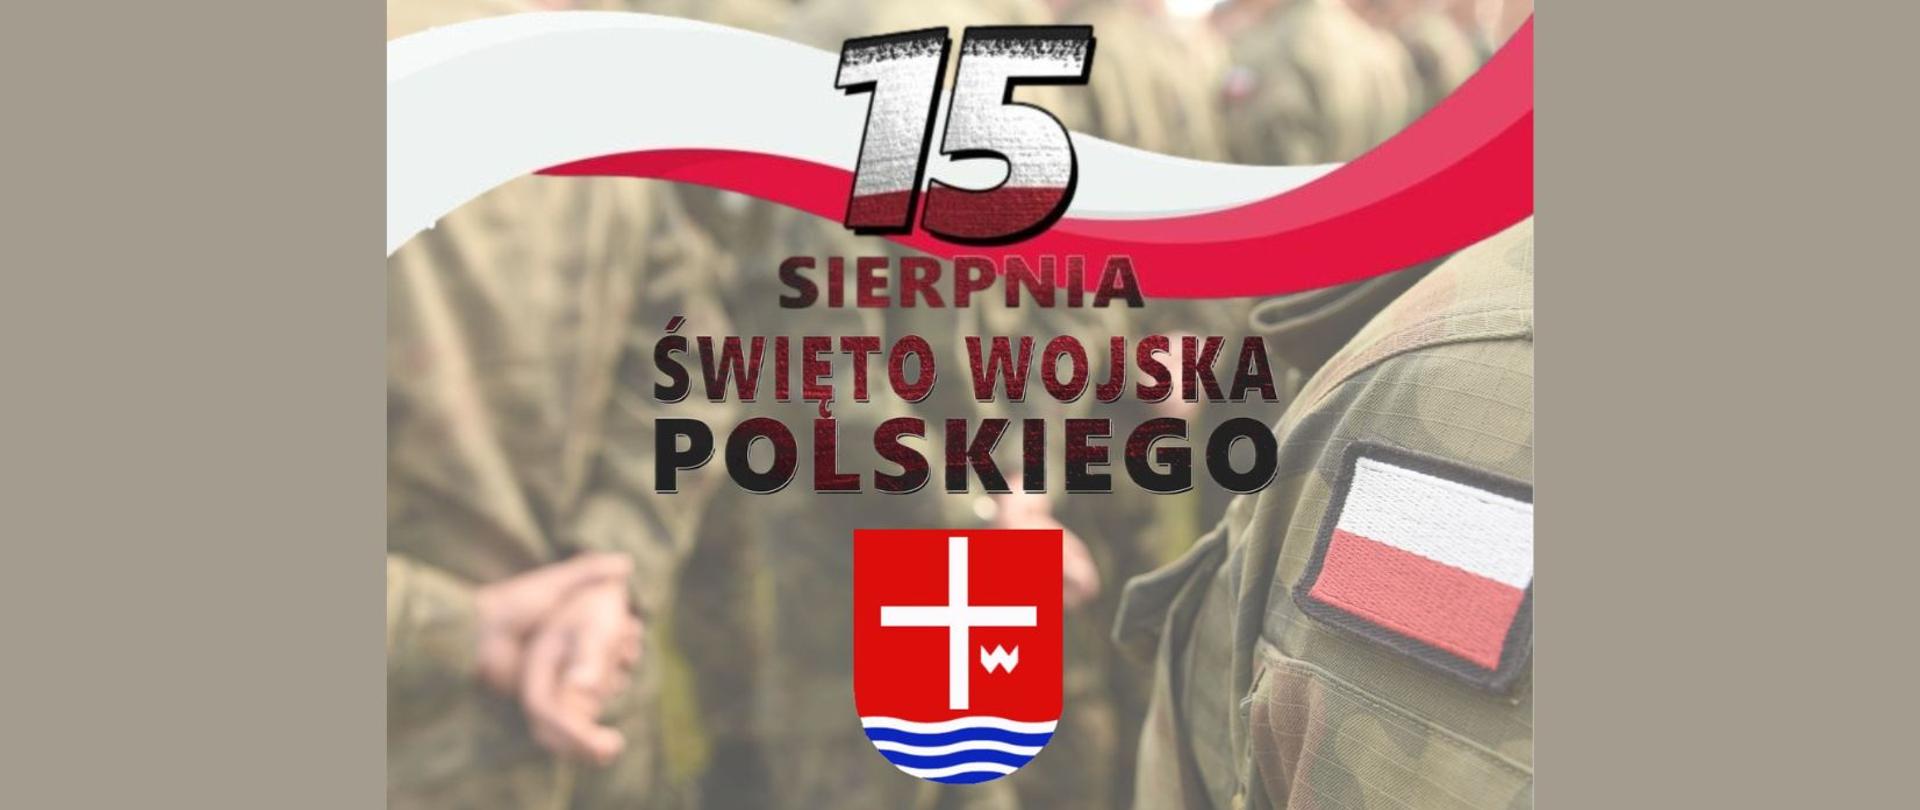 Napis 15 sierpnia - Święto Wojska Polskiego z herbem powiatu lipskiego. W tle Flaga Polski oraz zdjęcie z sylwetkami żołnierzy.